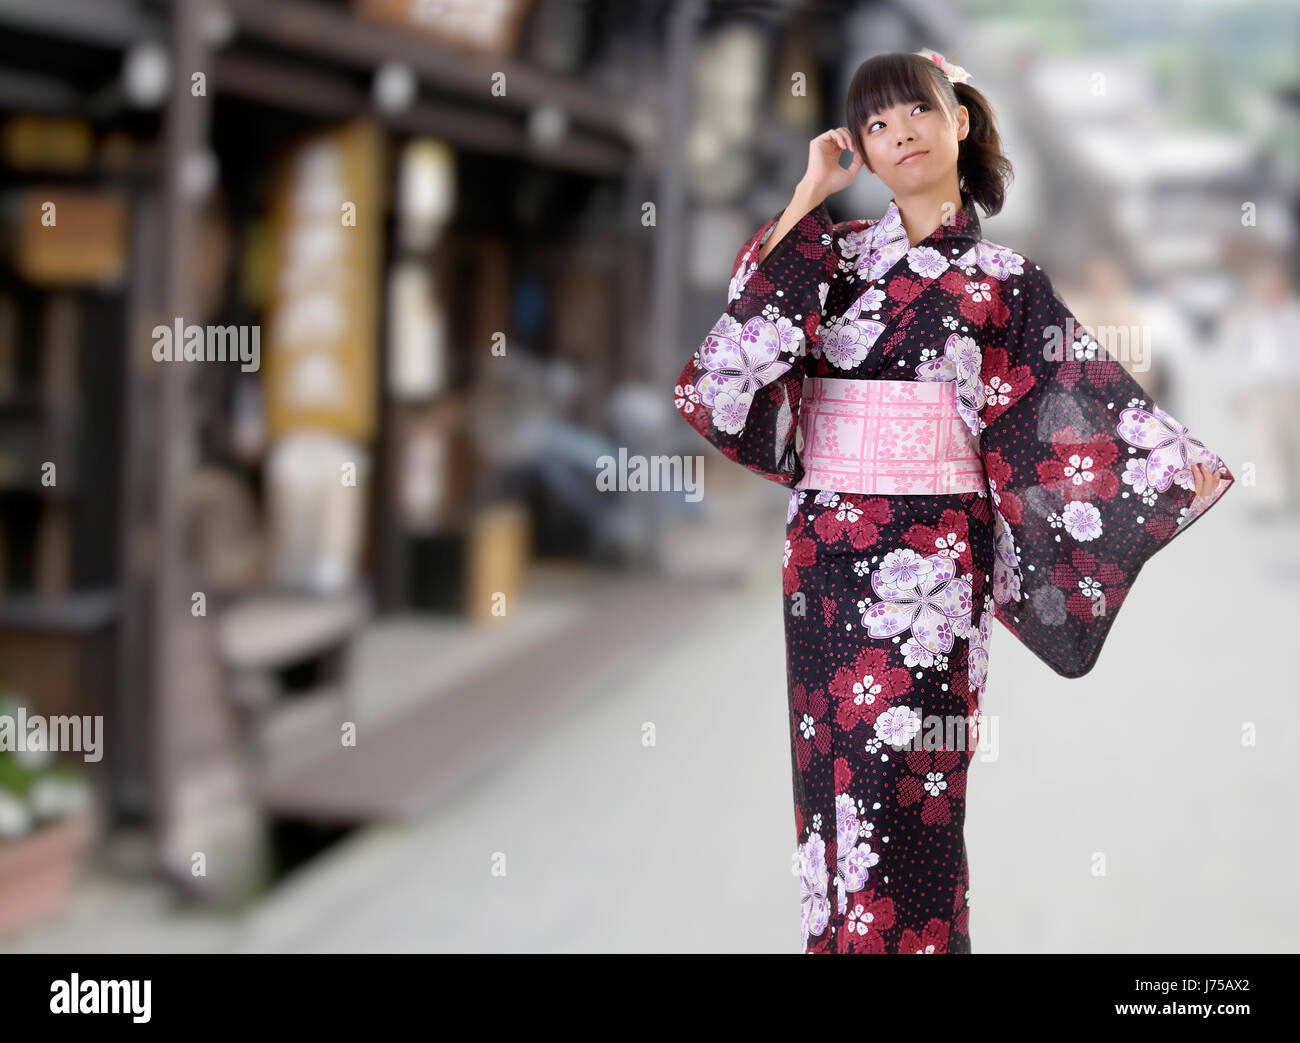 zuversichtlich attraktiven Kleid Yukata japanischer Kimono Mädchen  Lifestyle portrait Stockfotografie - Alamy